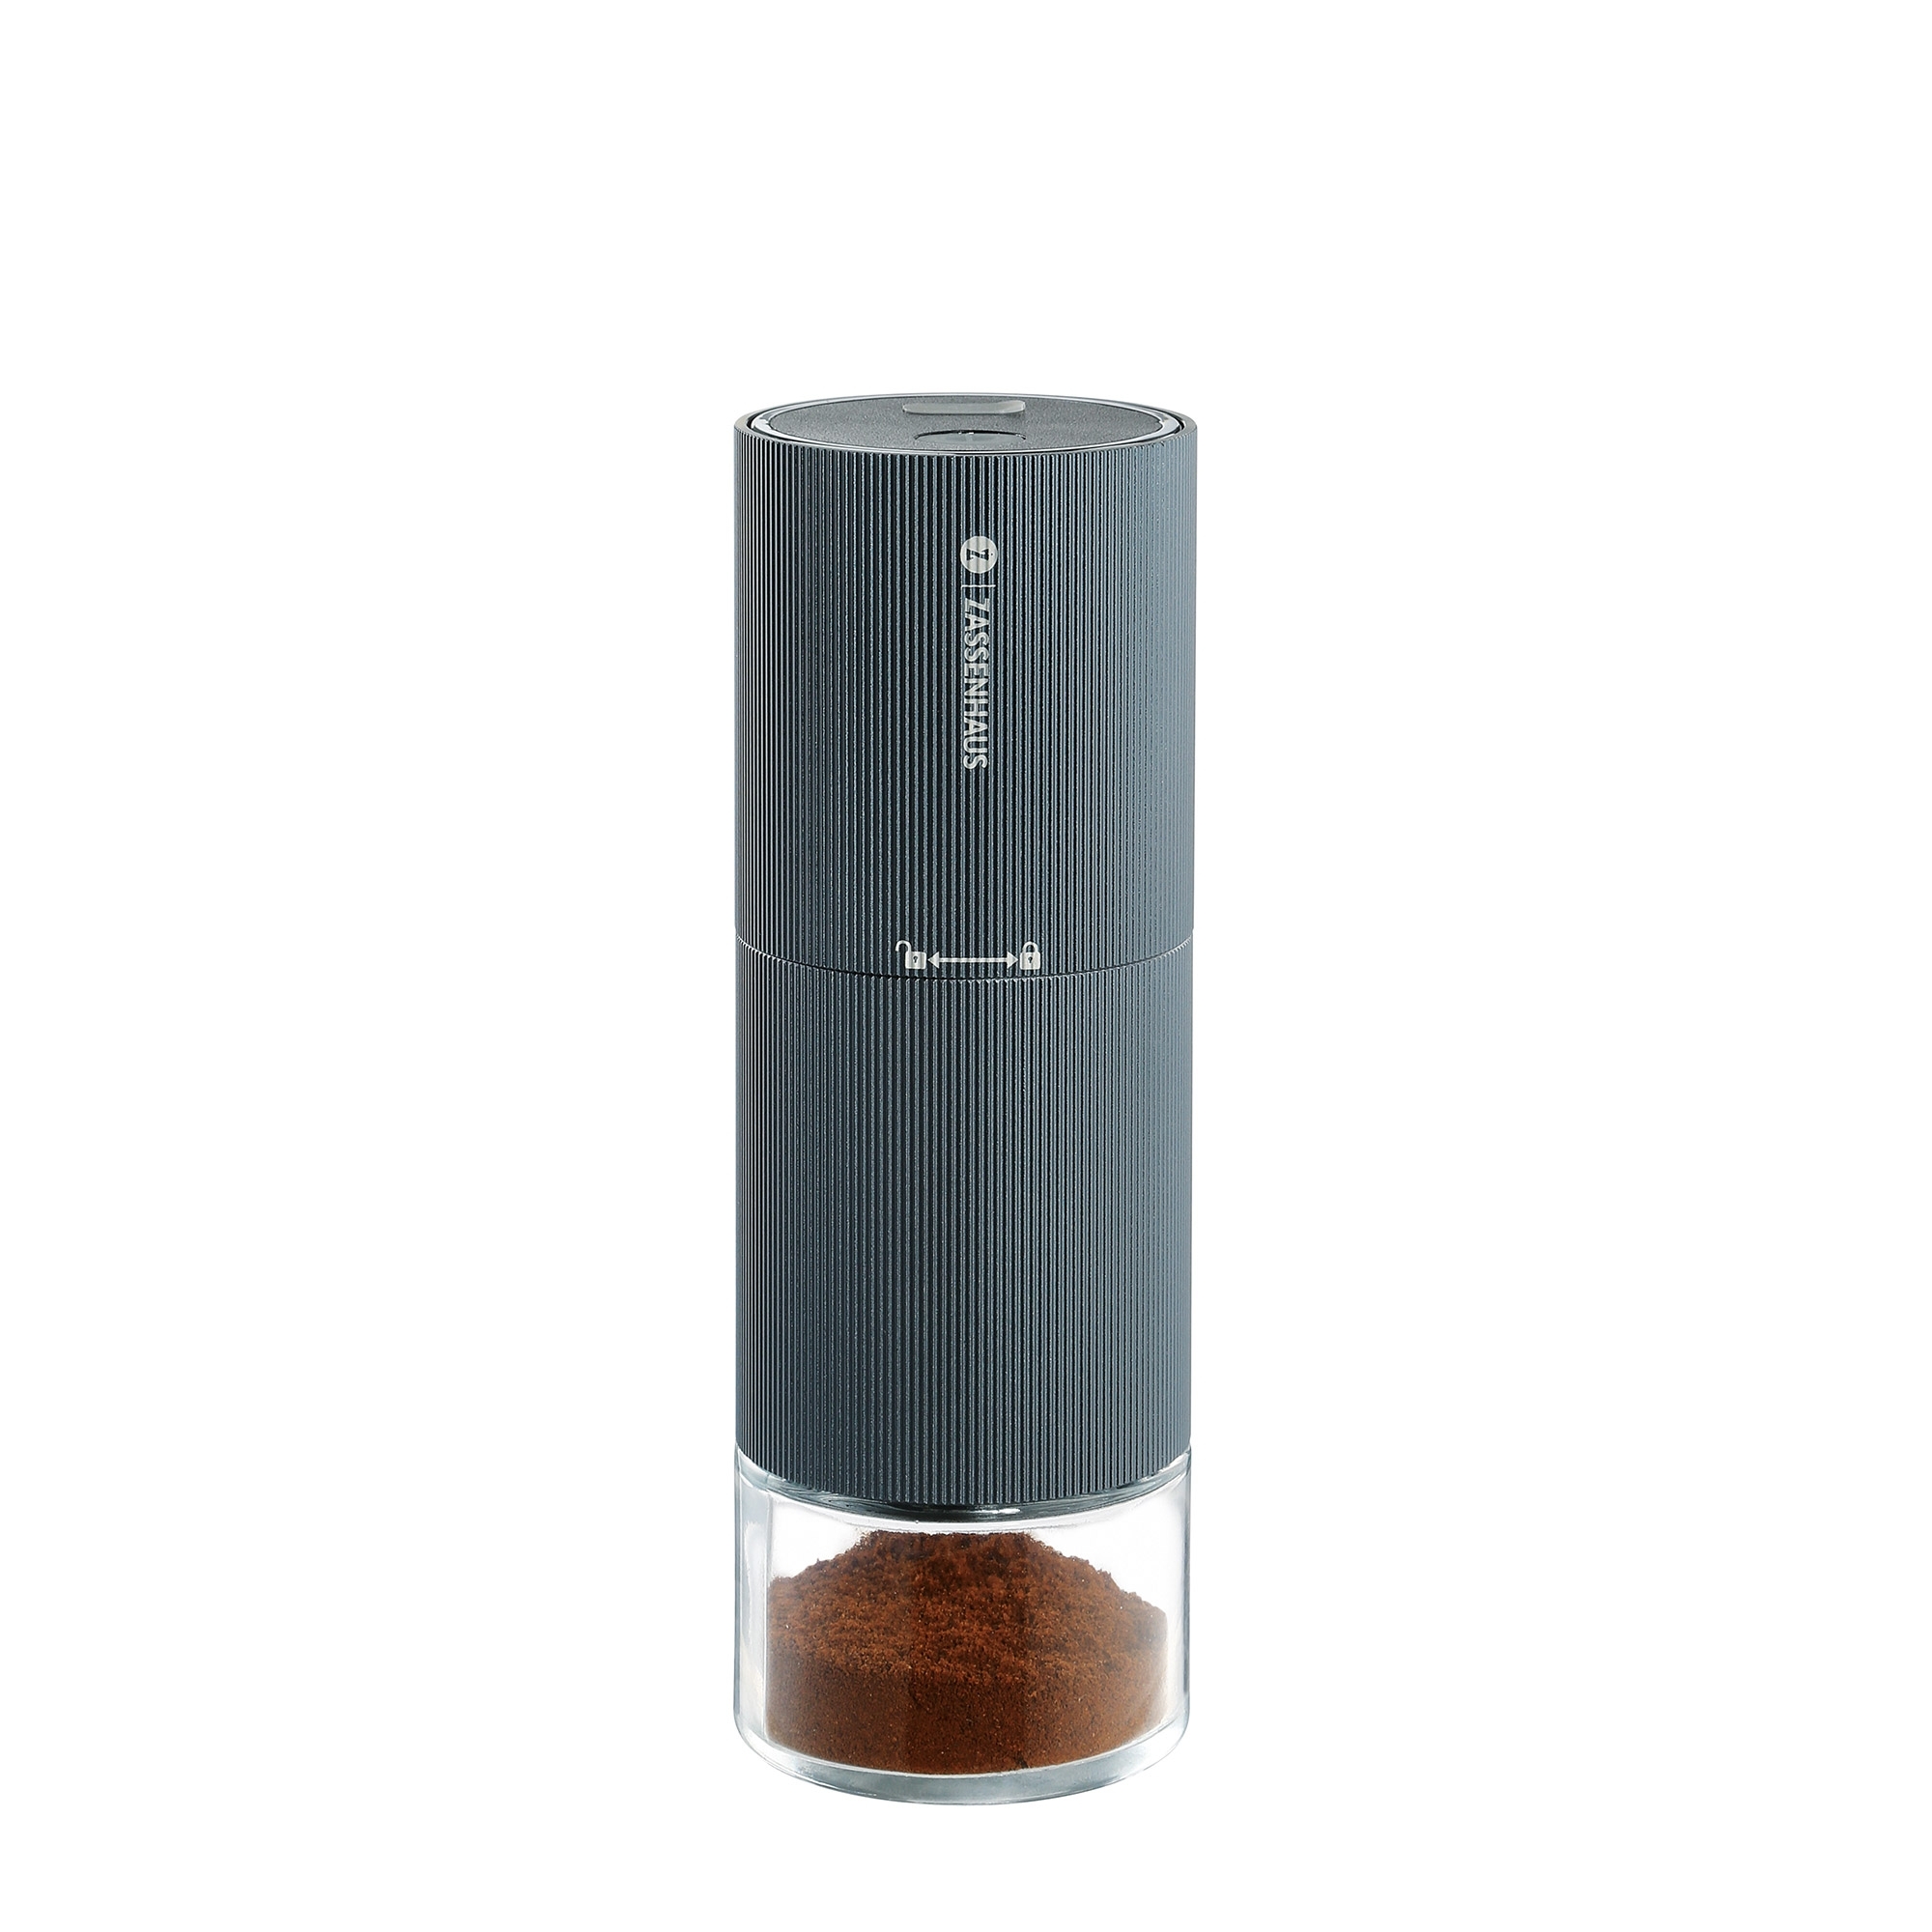 Zassenhaus - Kaffeemühle/Espressomühle MASTER USB